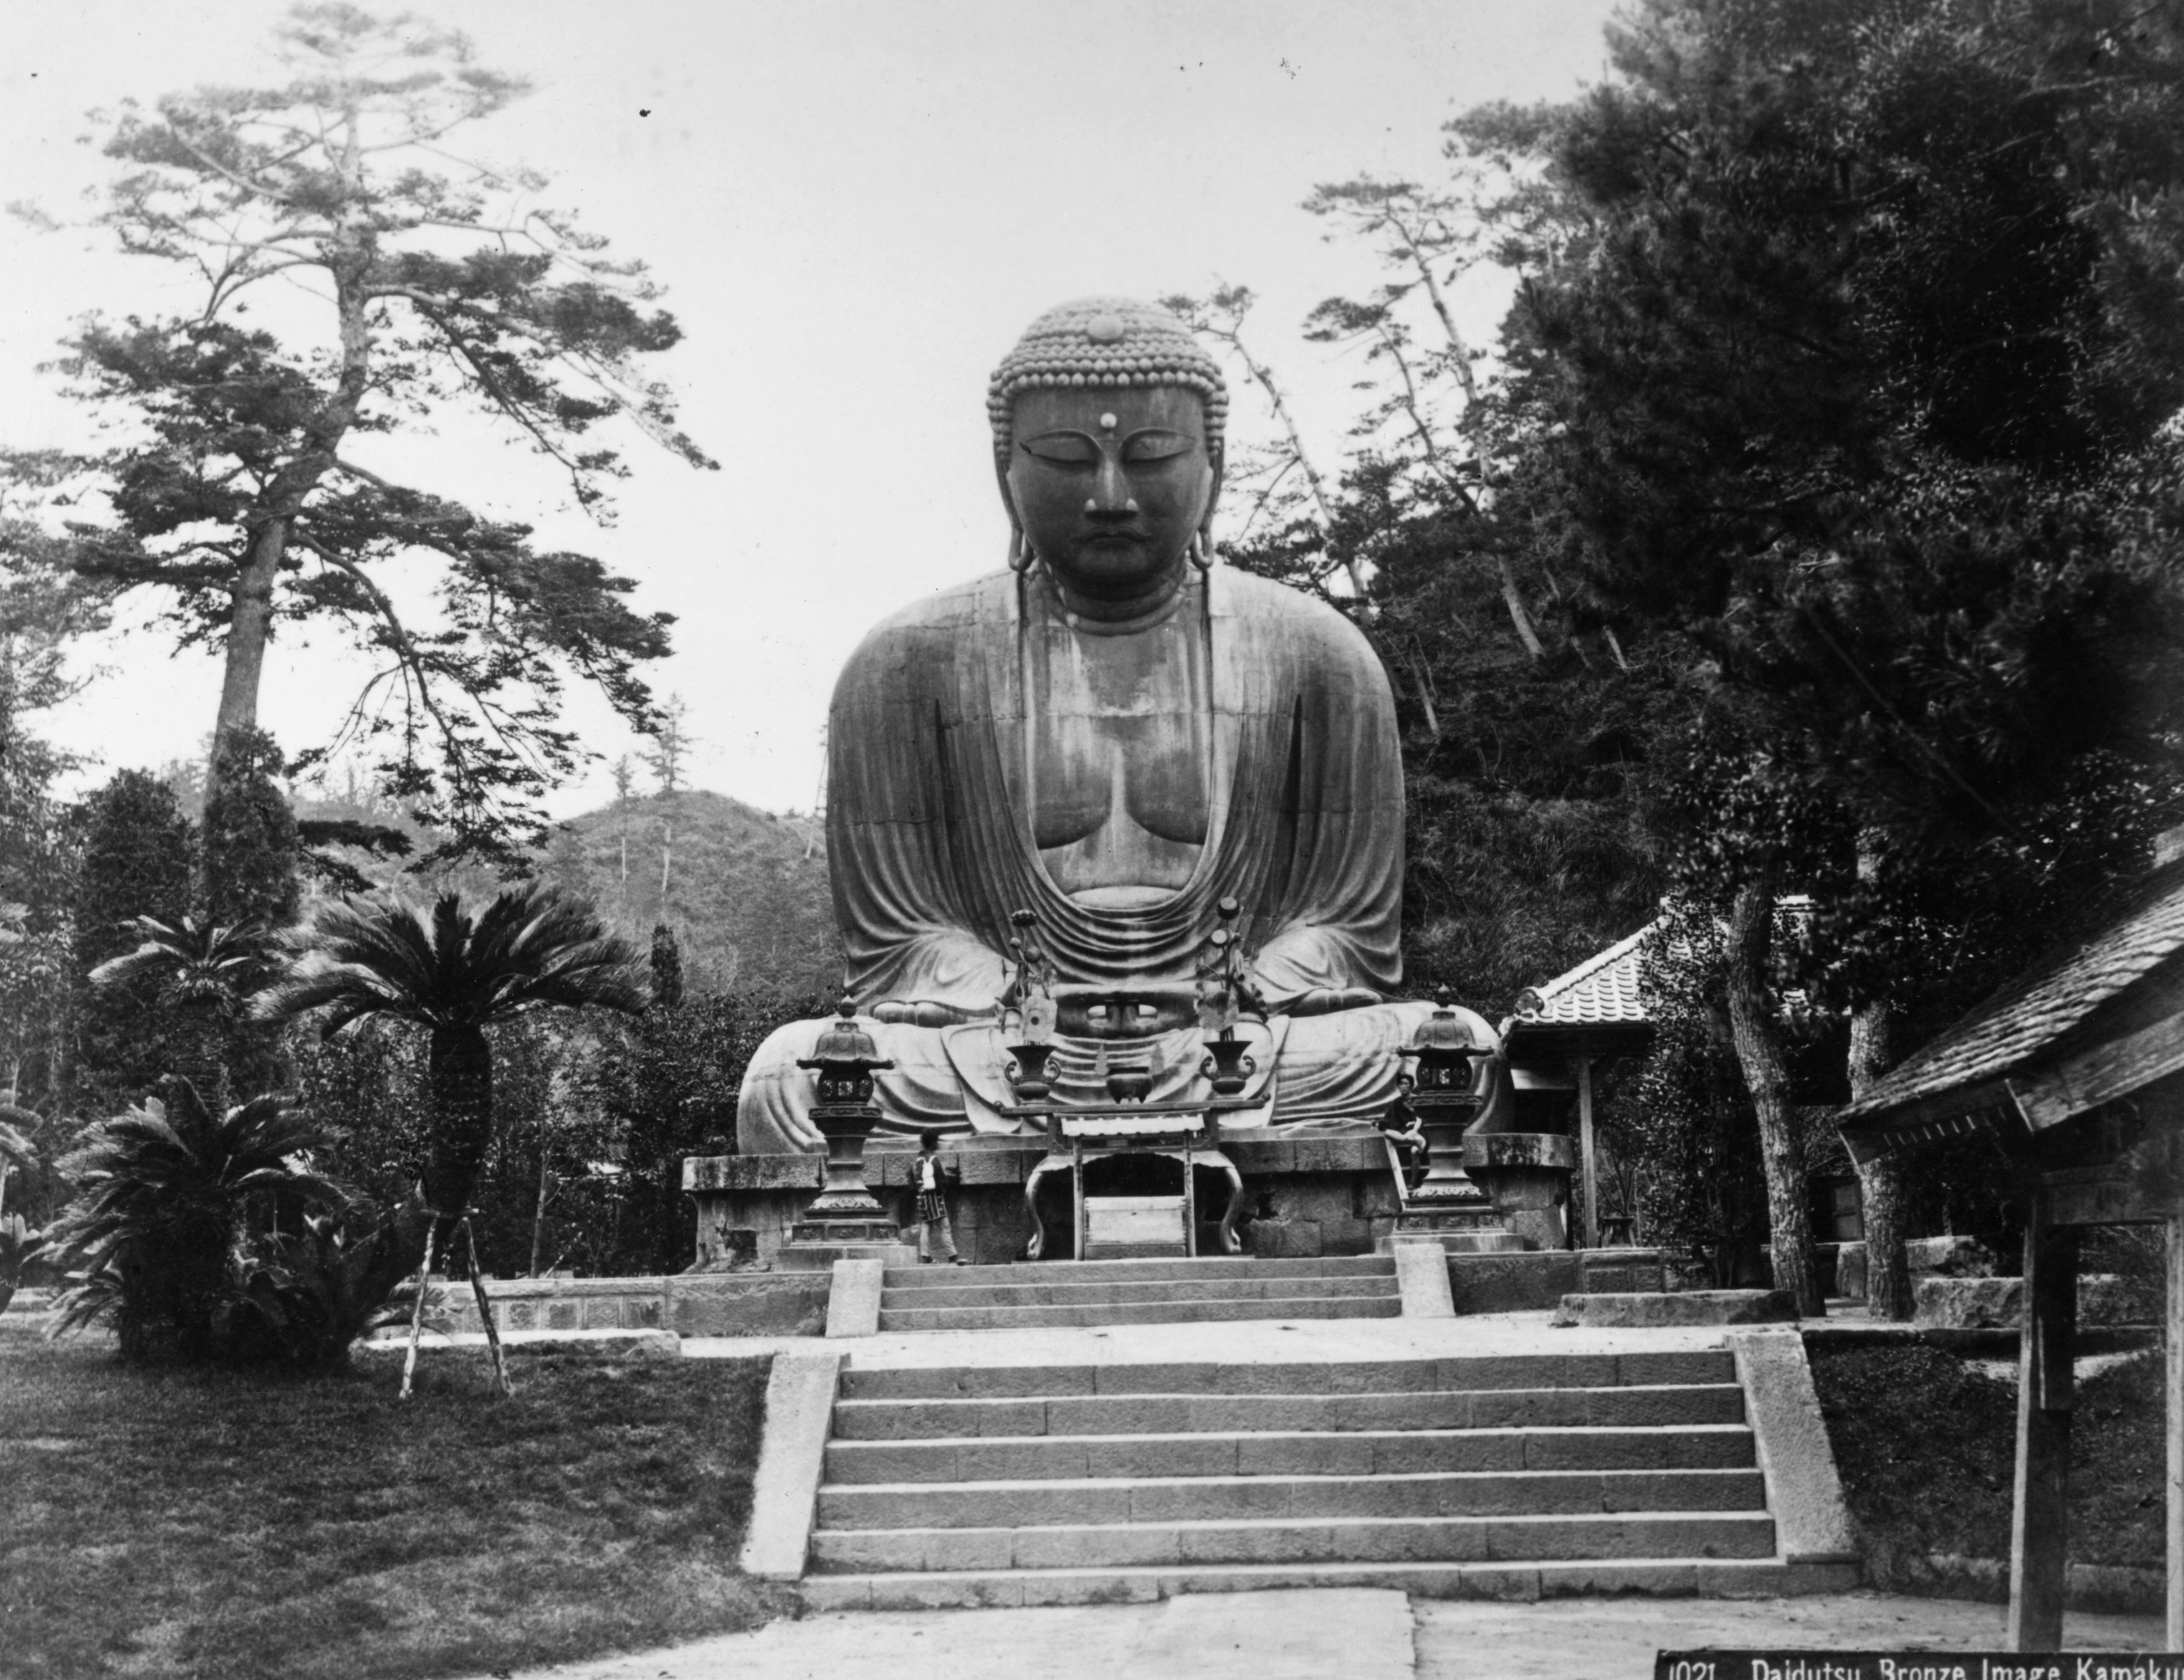 Le opere più belle del mondo…secondo noi: #10 Il Buddha di Kamakura